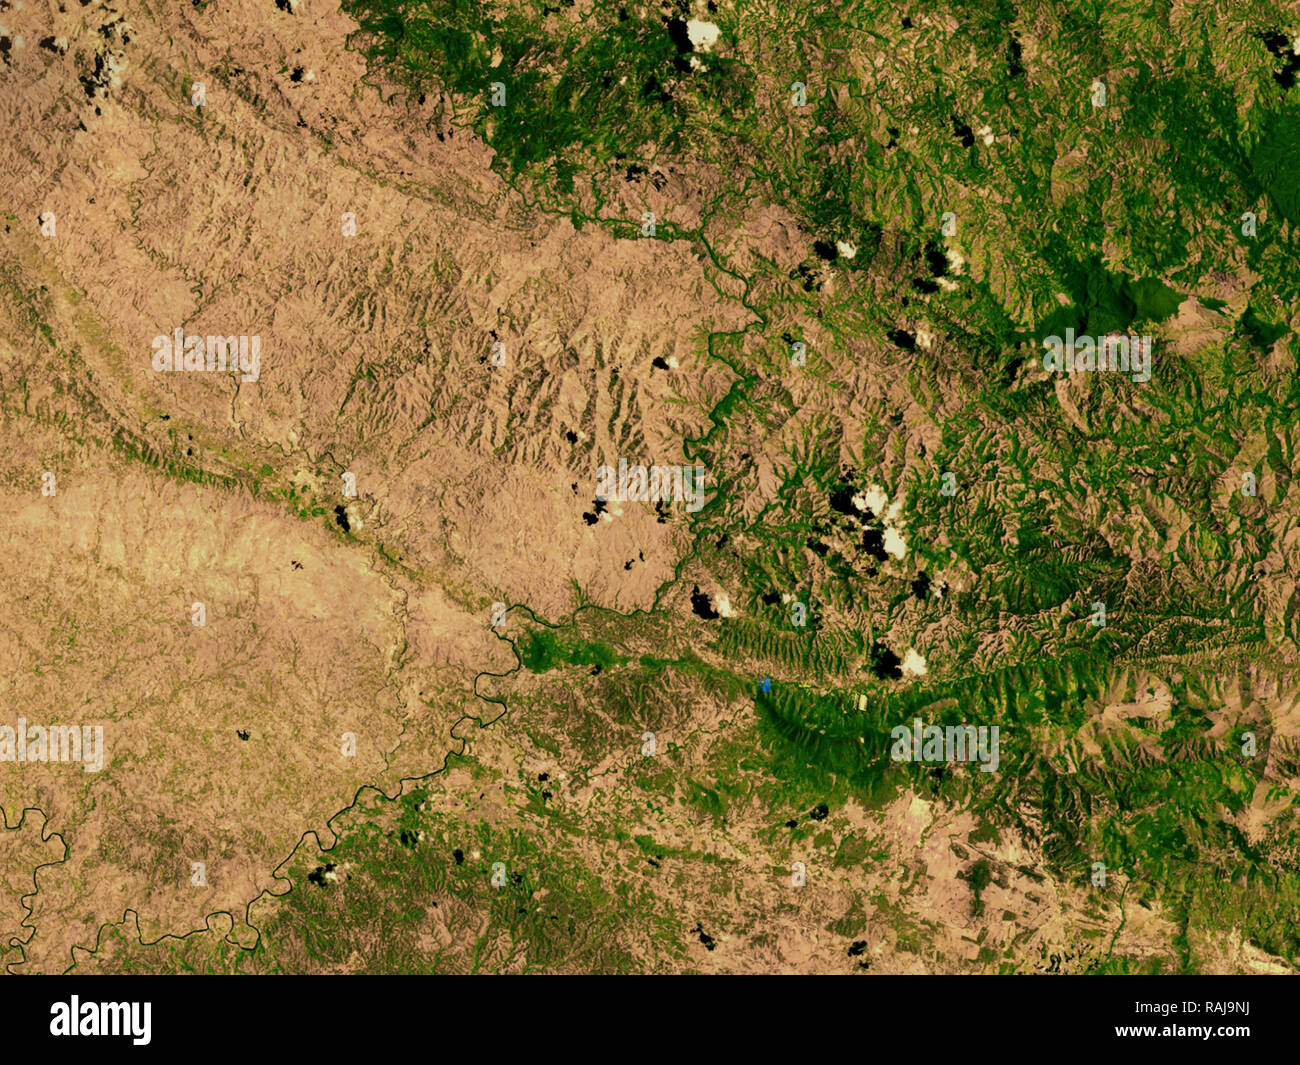 La deforestación en la frontera entre Haití y la República dejó de Dominica que muestran los efectos de la deforestación. Foto: Cortesía de la NASA Foto de stock